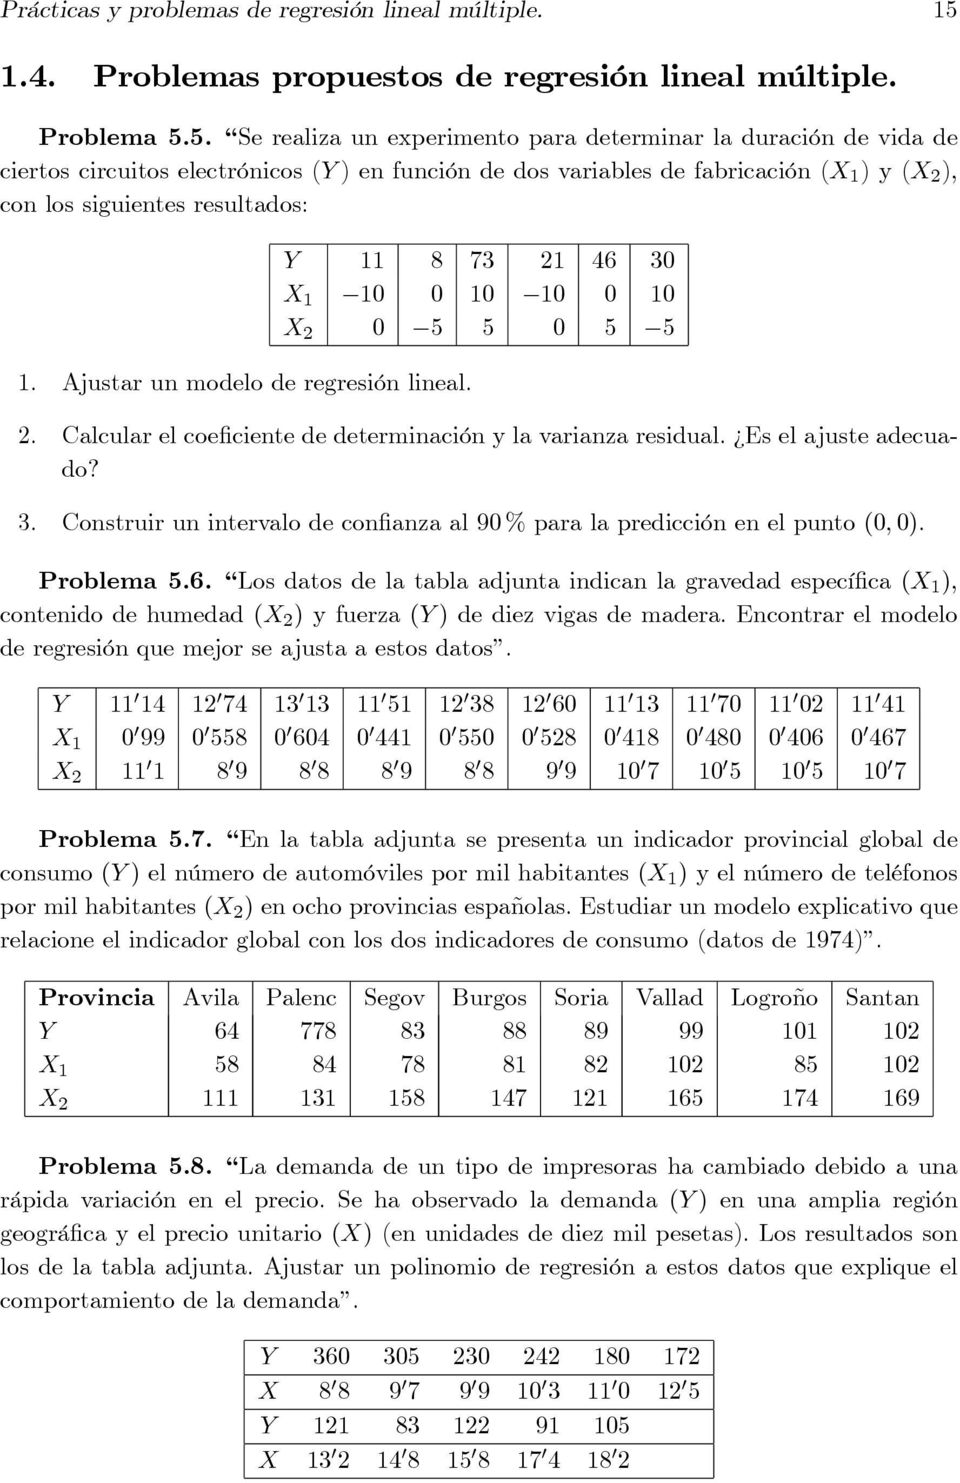 Prácticas y problemas de regresión lineal múltiple. - PDF Descargar libre